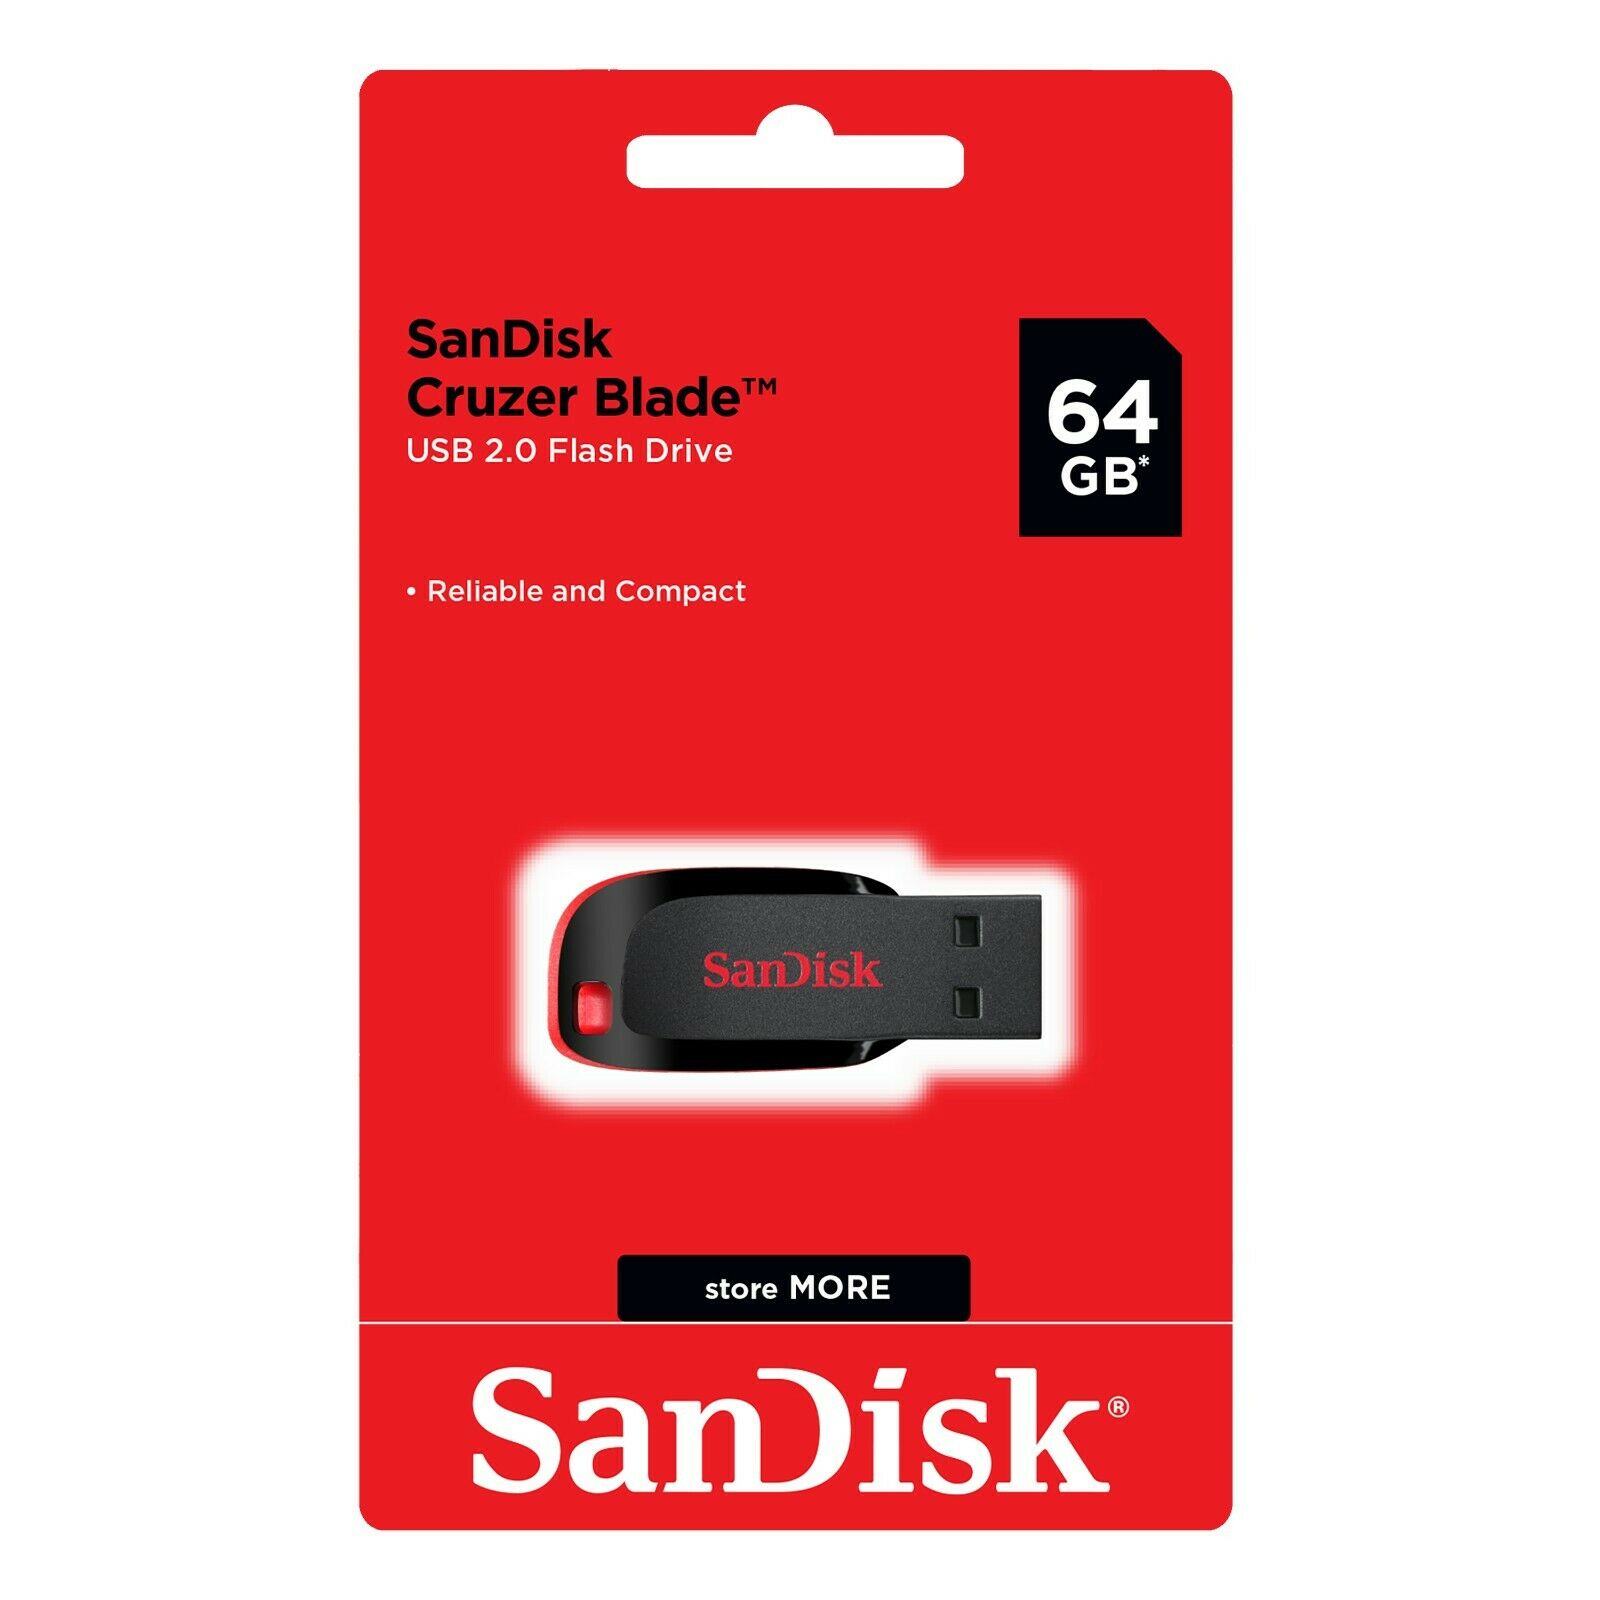 Sandisk 64gb Cruzer Blade Usb 2.0  Flash Drive Thumb Pen Drive Usb Stick - Black